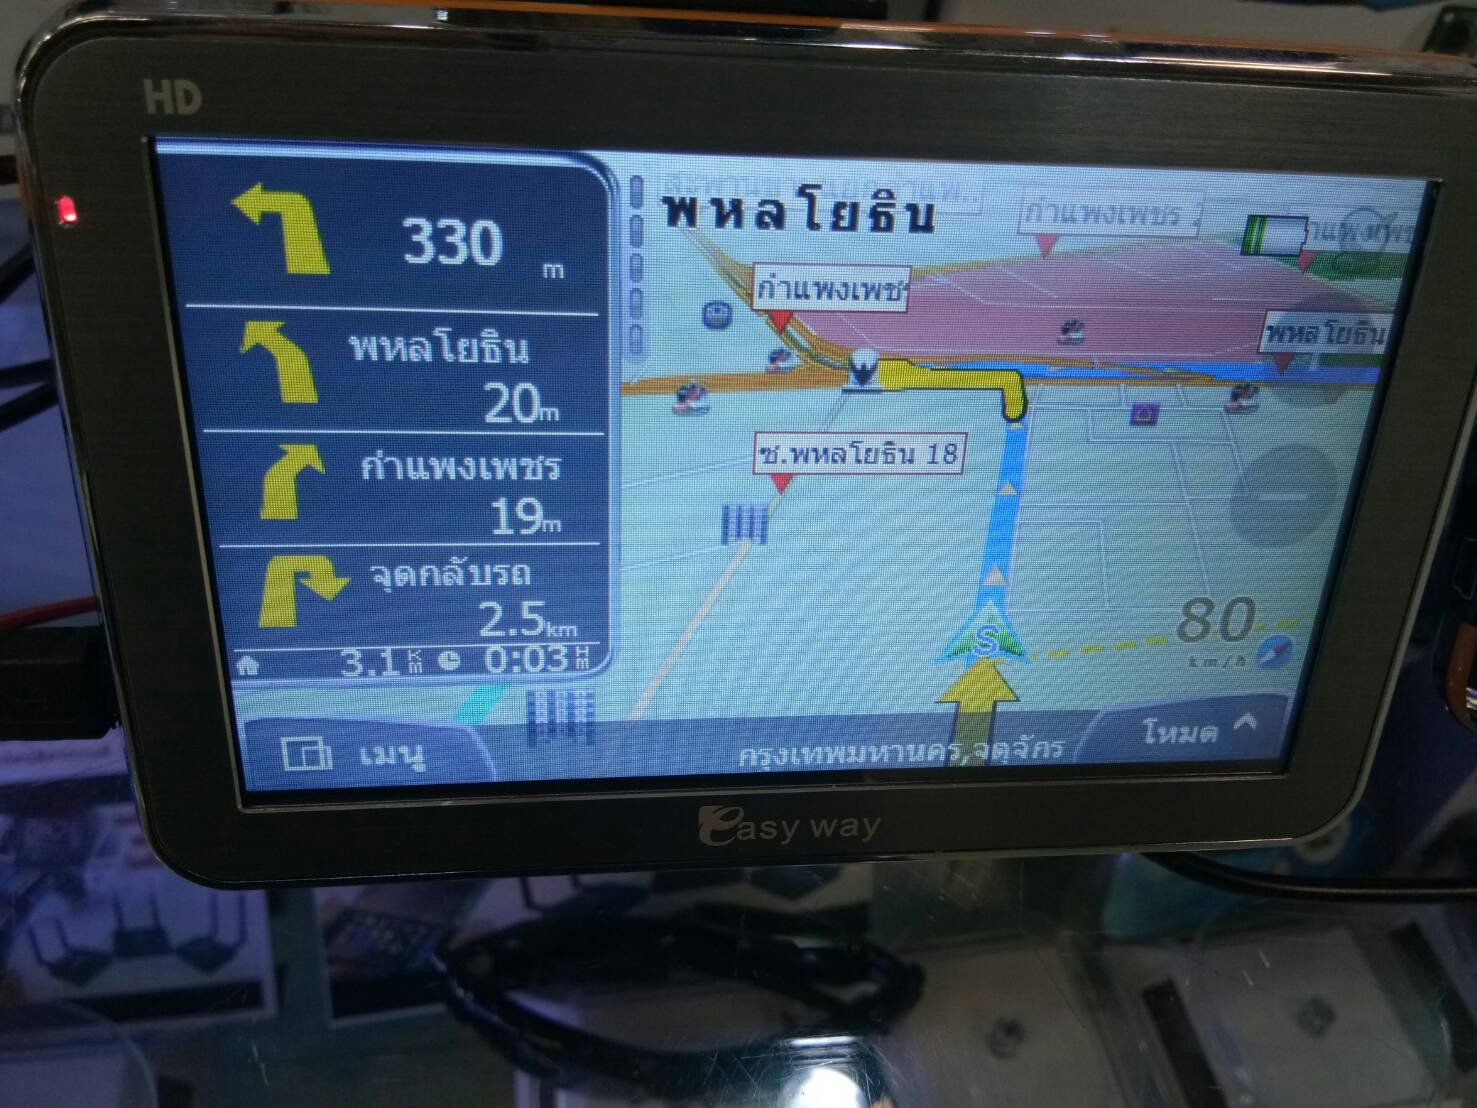 ขาย เครื่องนำทางติดรถยนต์ GPS จีพีเอสนำทาง พร้อมใช้ สินค้าใหม่